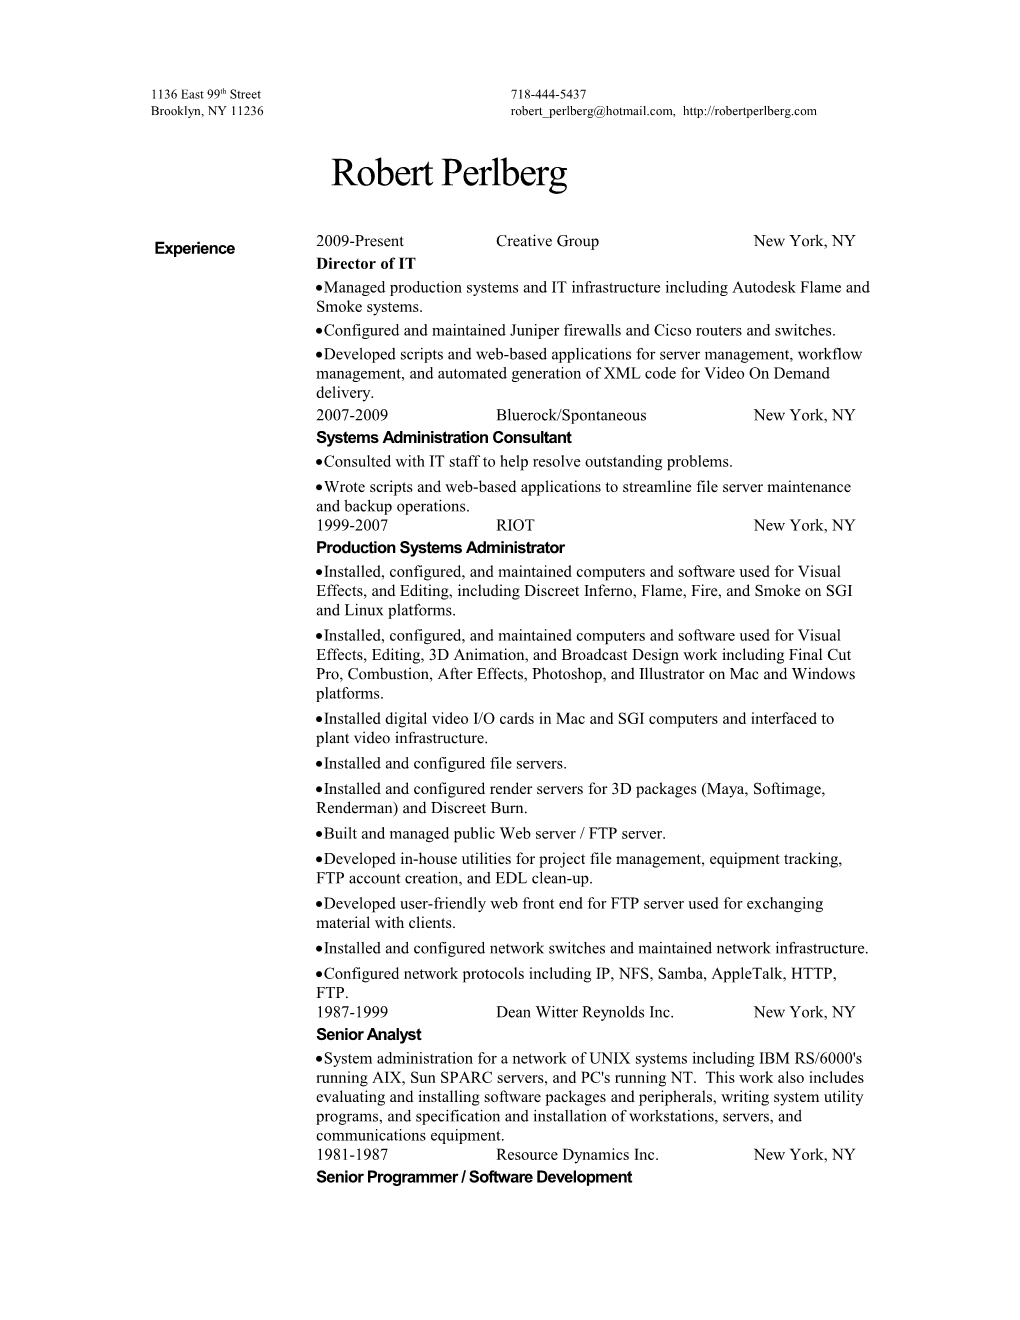 Robert Perlberg Resume